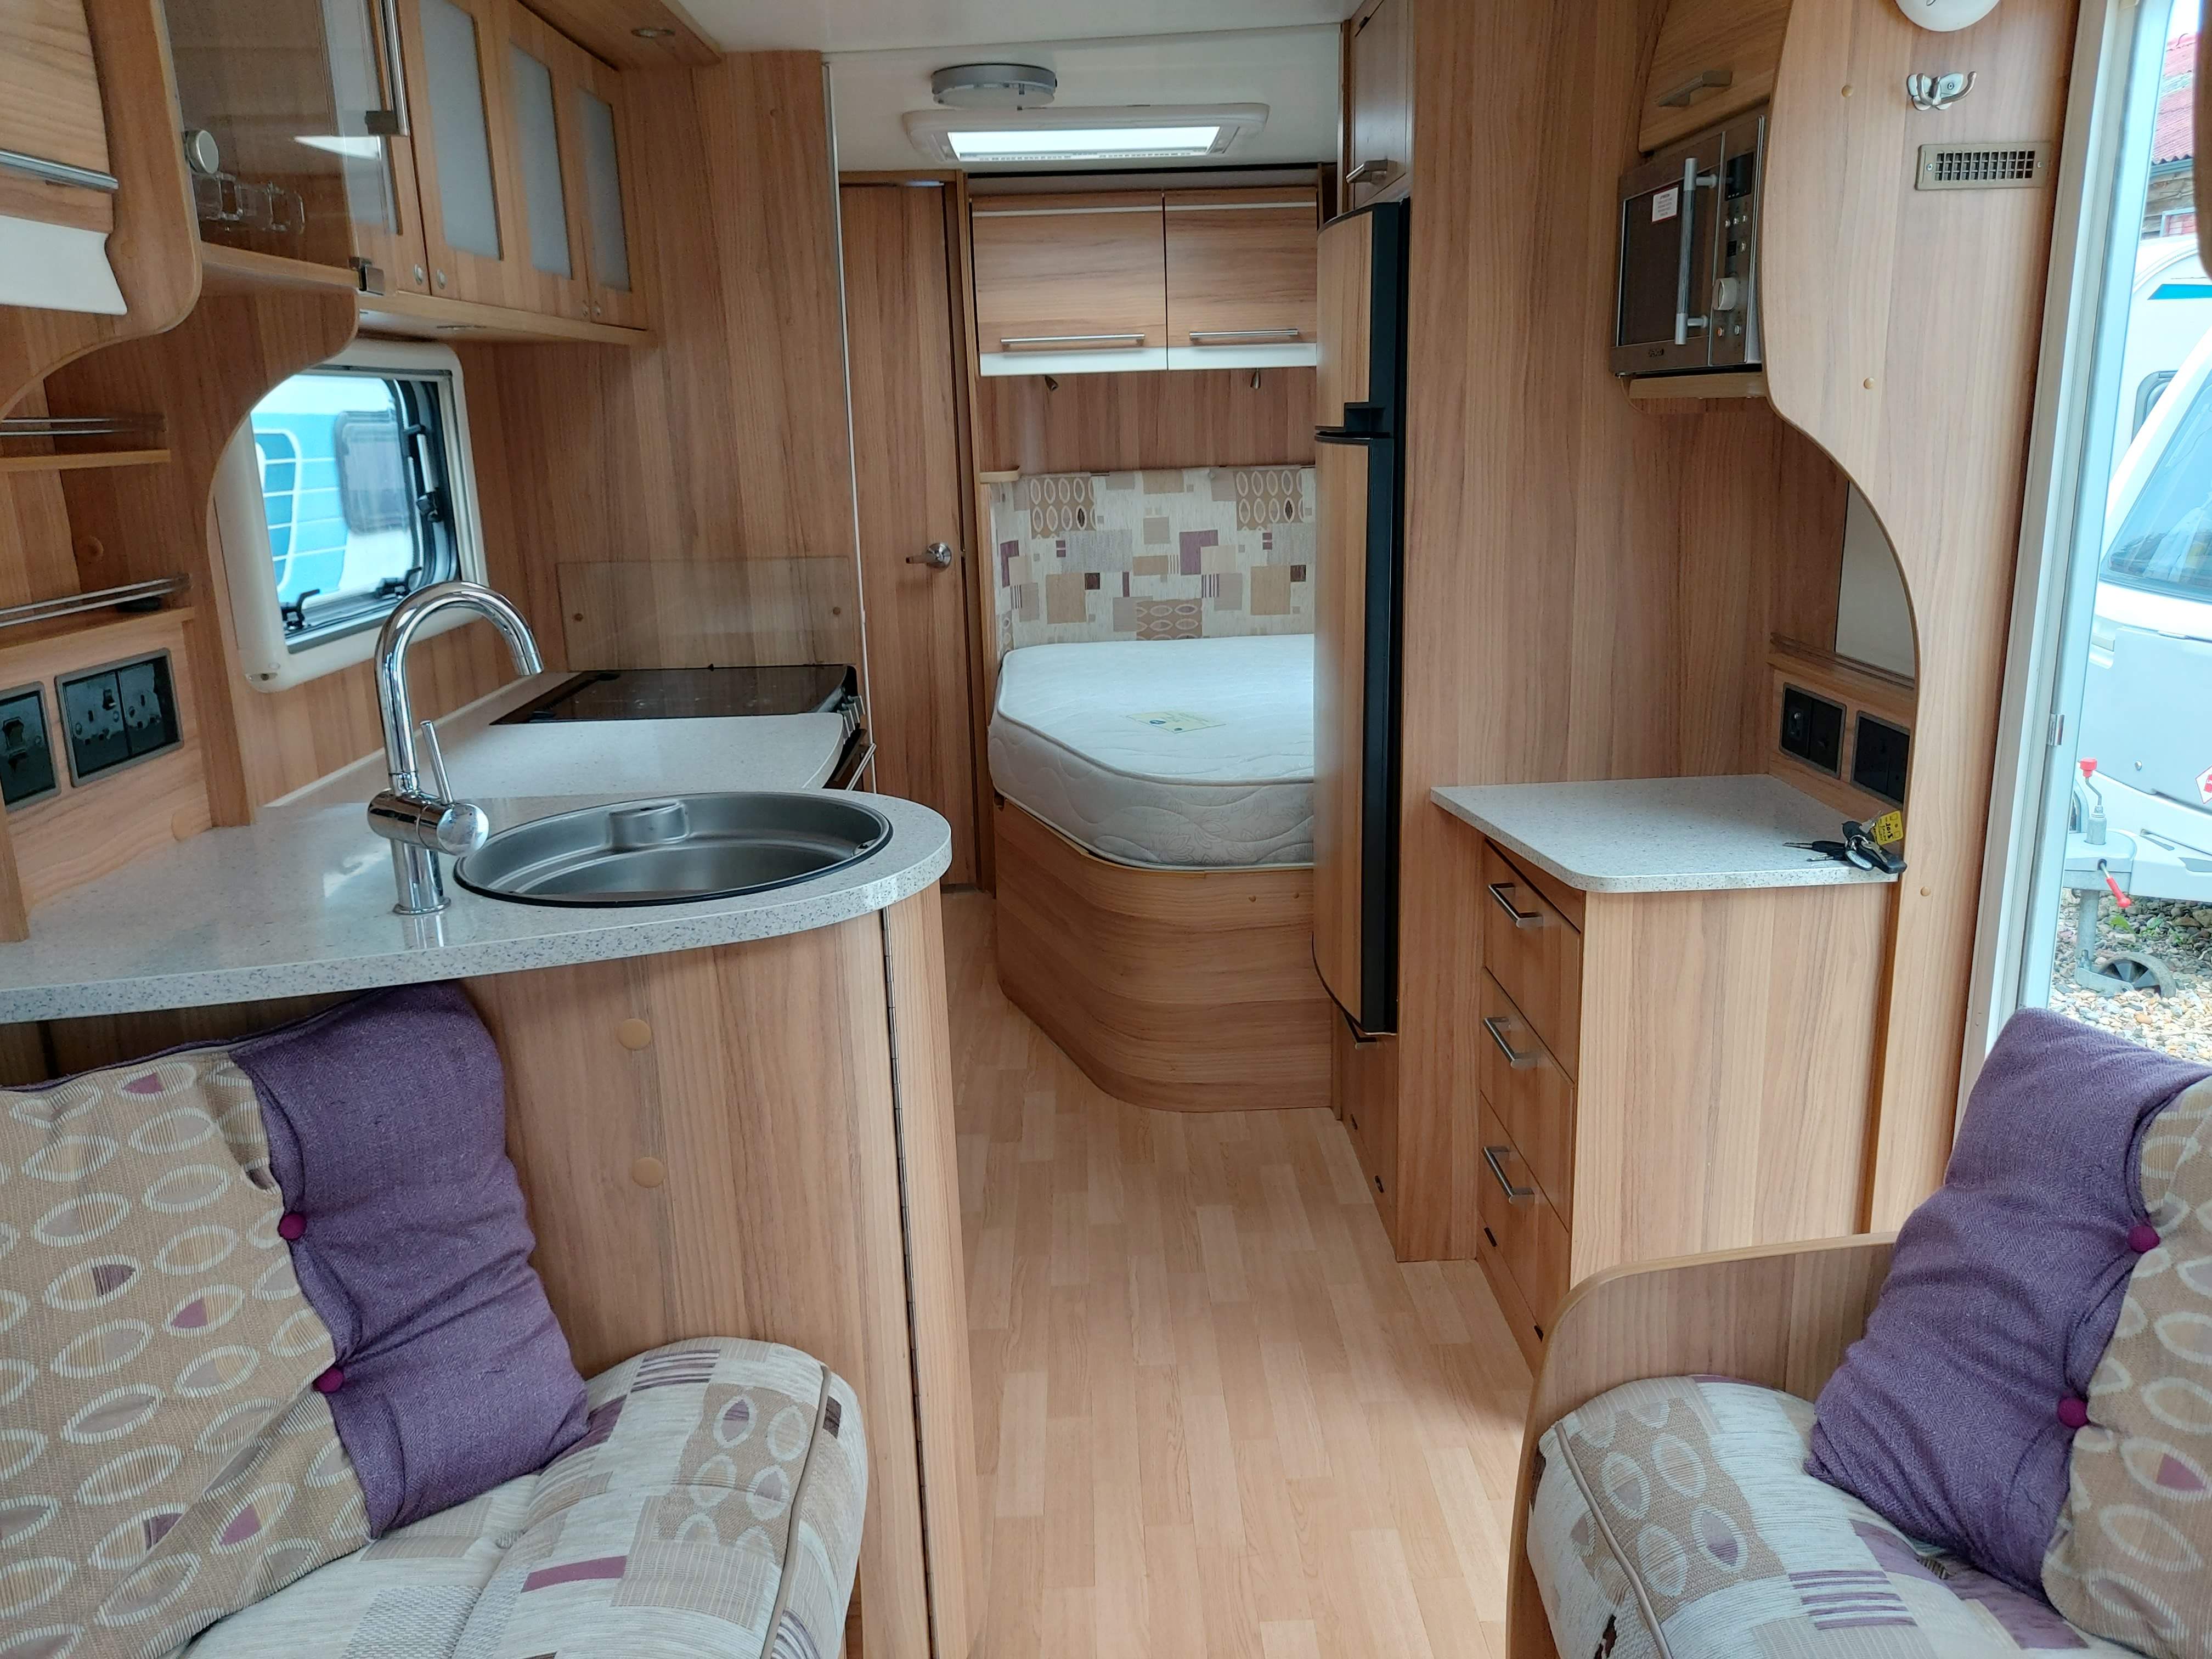 2013 Bailey Unicorn Barcelona 4 Berth Fixed Bed Twin Axle End Washroom Caravan